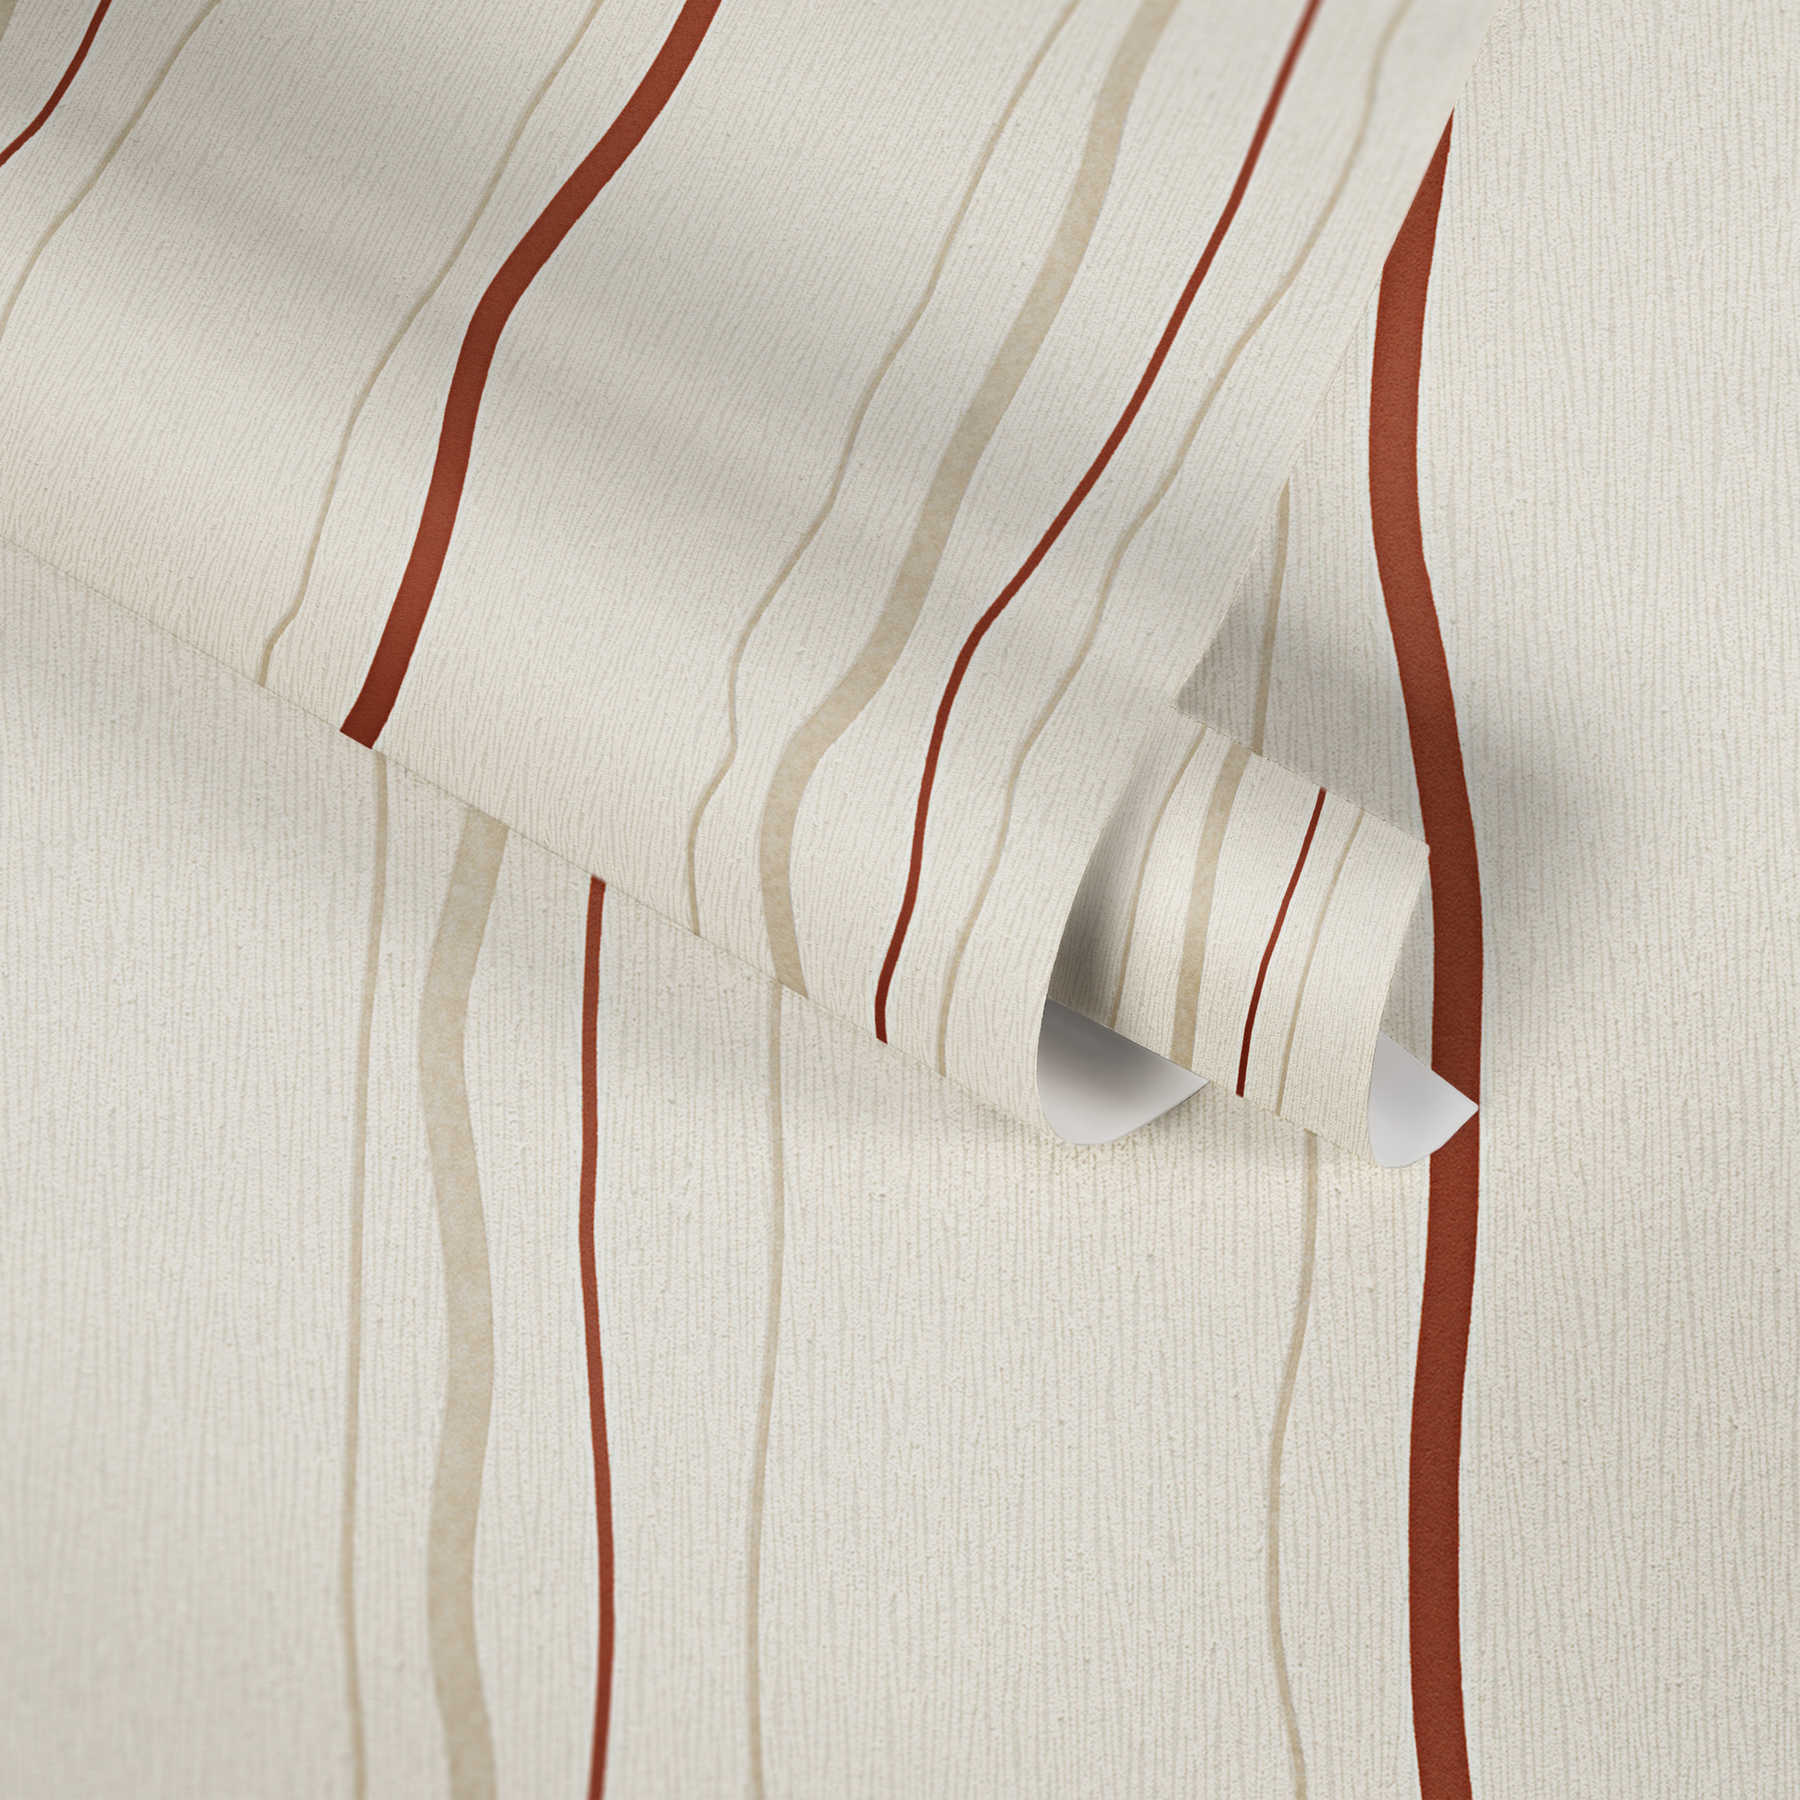             Papel pintado de rayas verticales - crema, rojo, beige
        